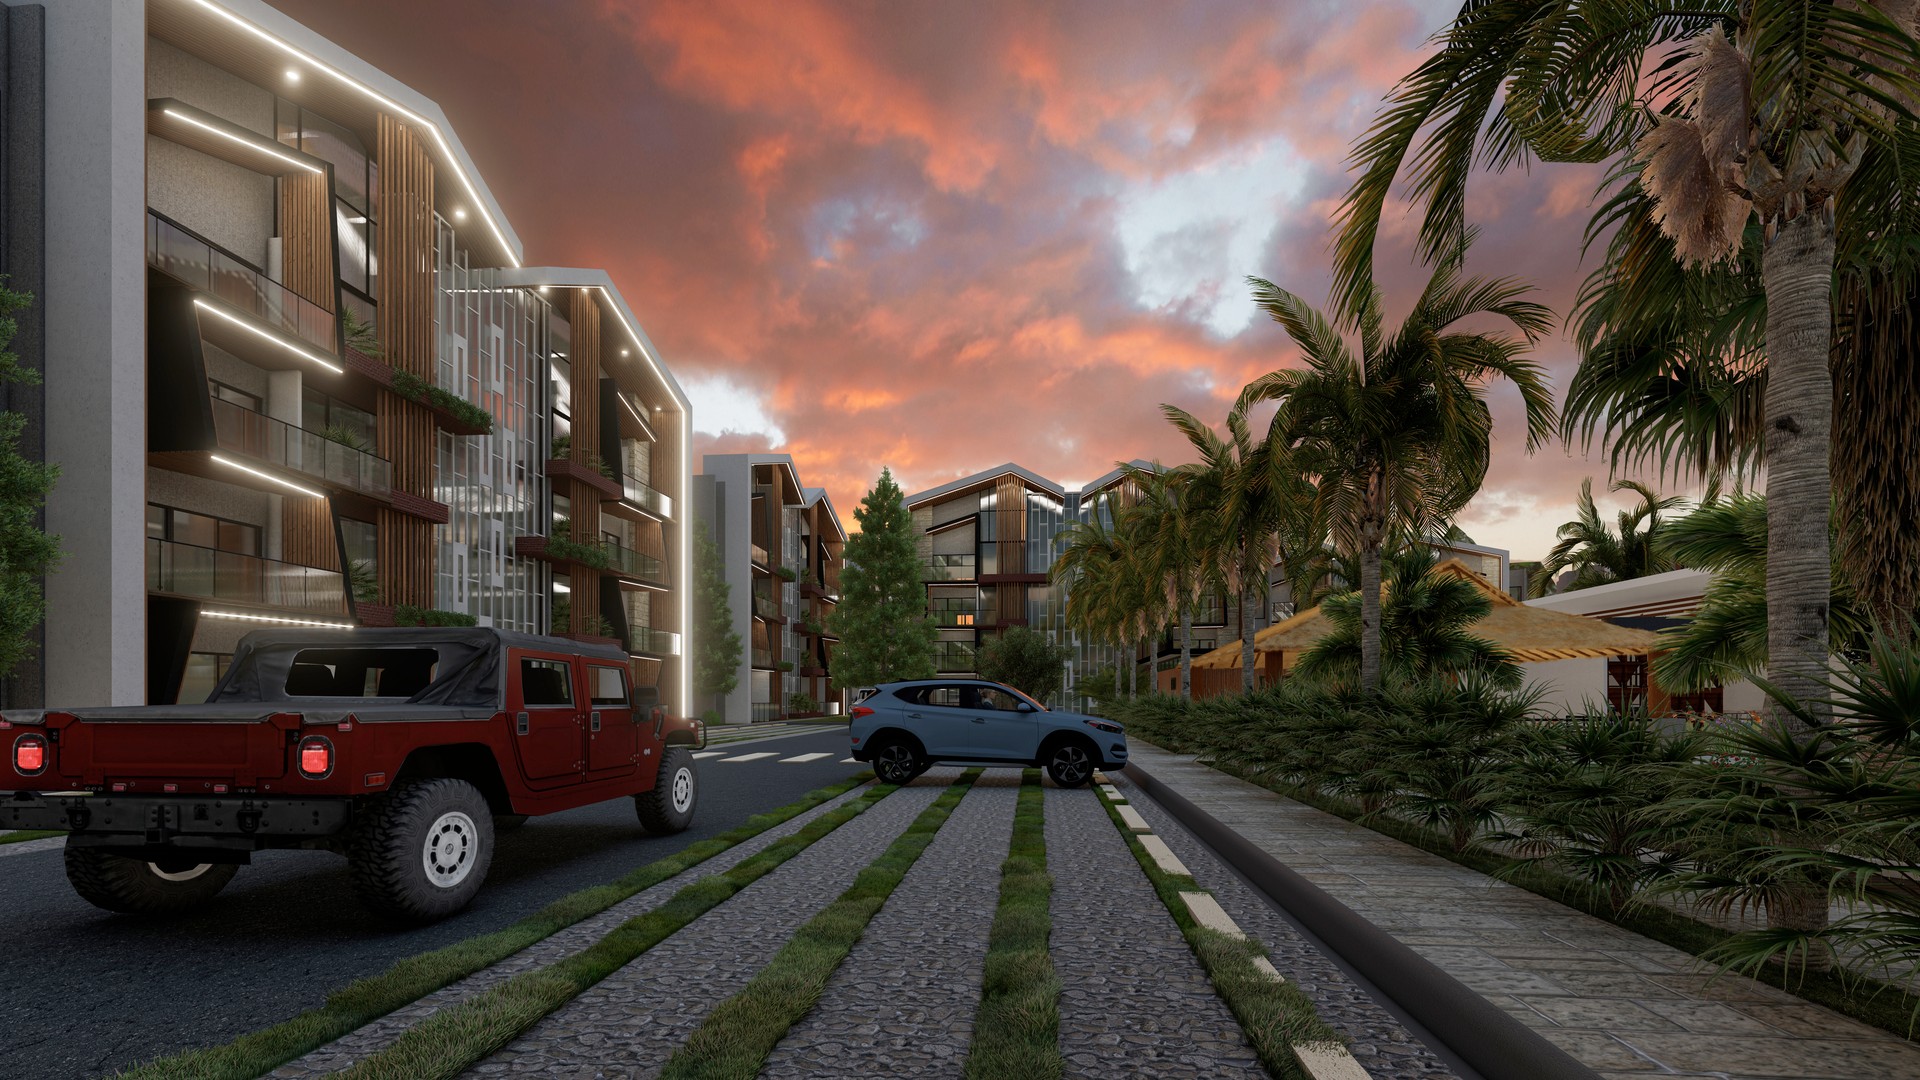 apartamentos - Apartamentos Turísticos en Jarabacoa, con piscina y plaza comercial  2